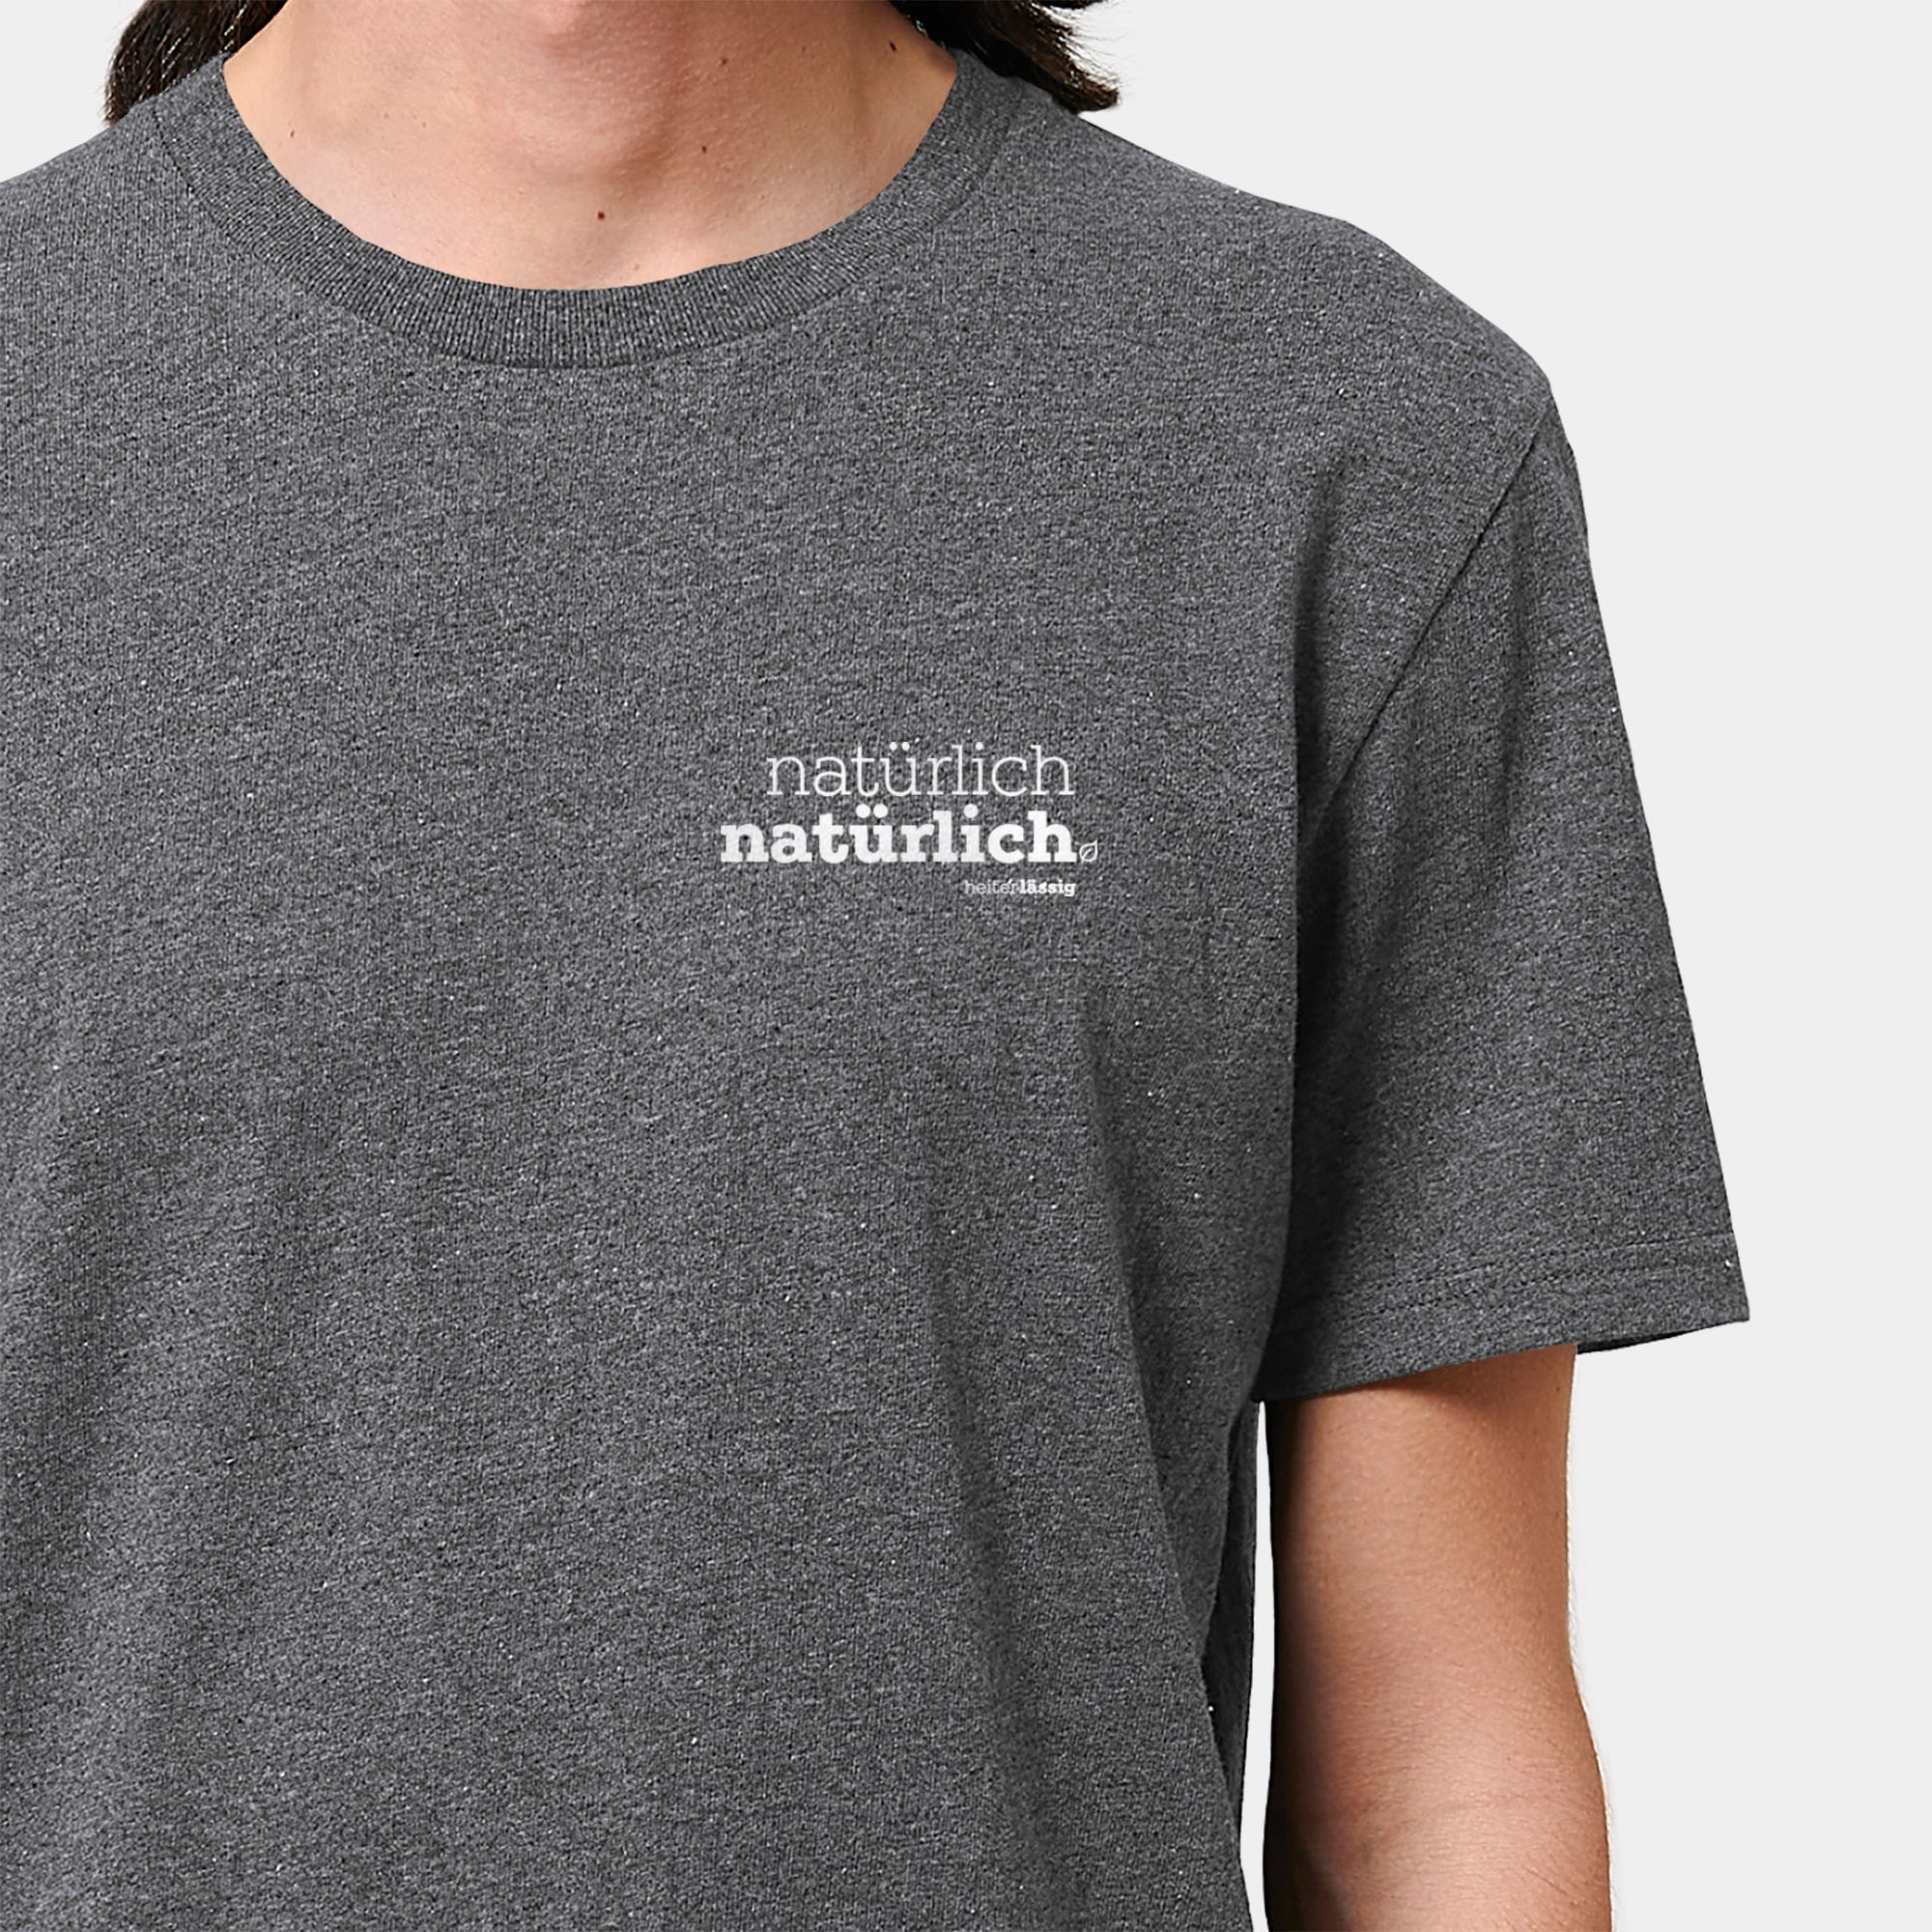 HEITER & LÄSSIG T-Shirt ORIGINAL "natürlich, natürlich" S / RE-schwarz - aus nachhaltiger und fairer Produktion